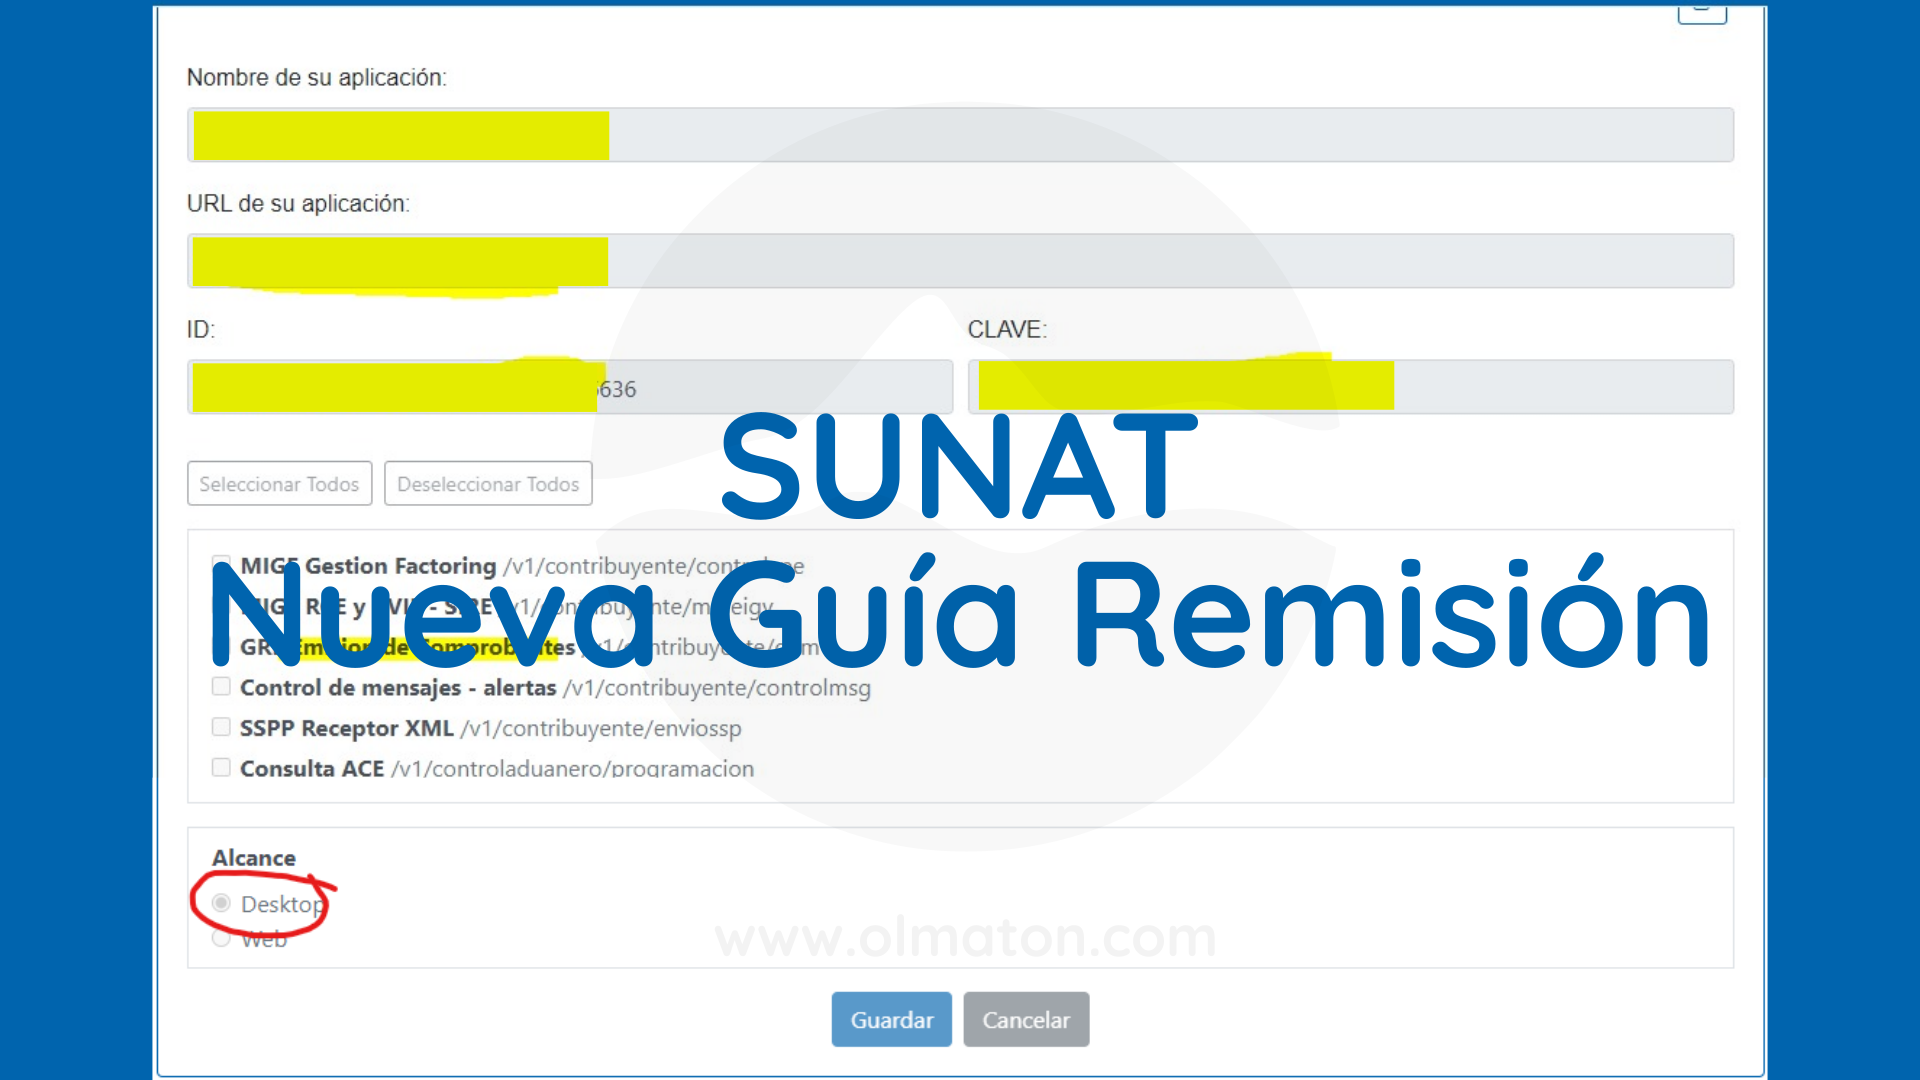 Ejemplo básico sobre las nuevas guías de remisión, SUNAT Perú